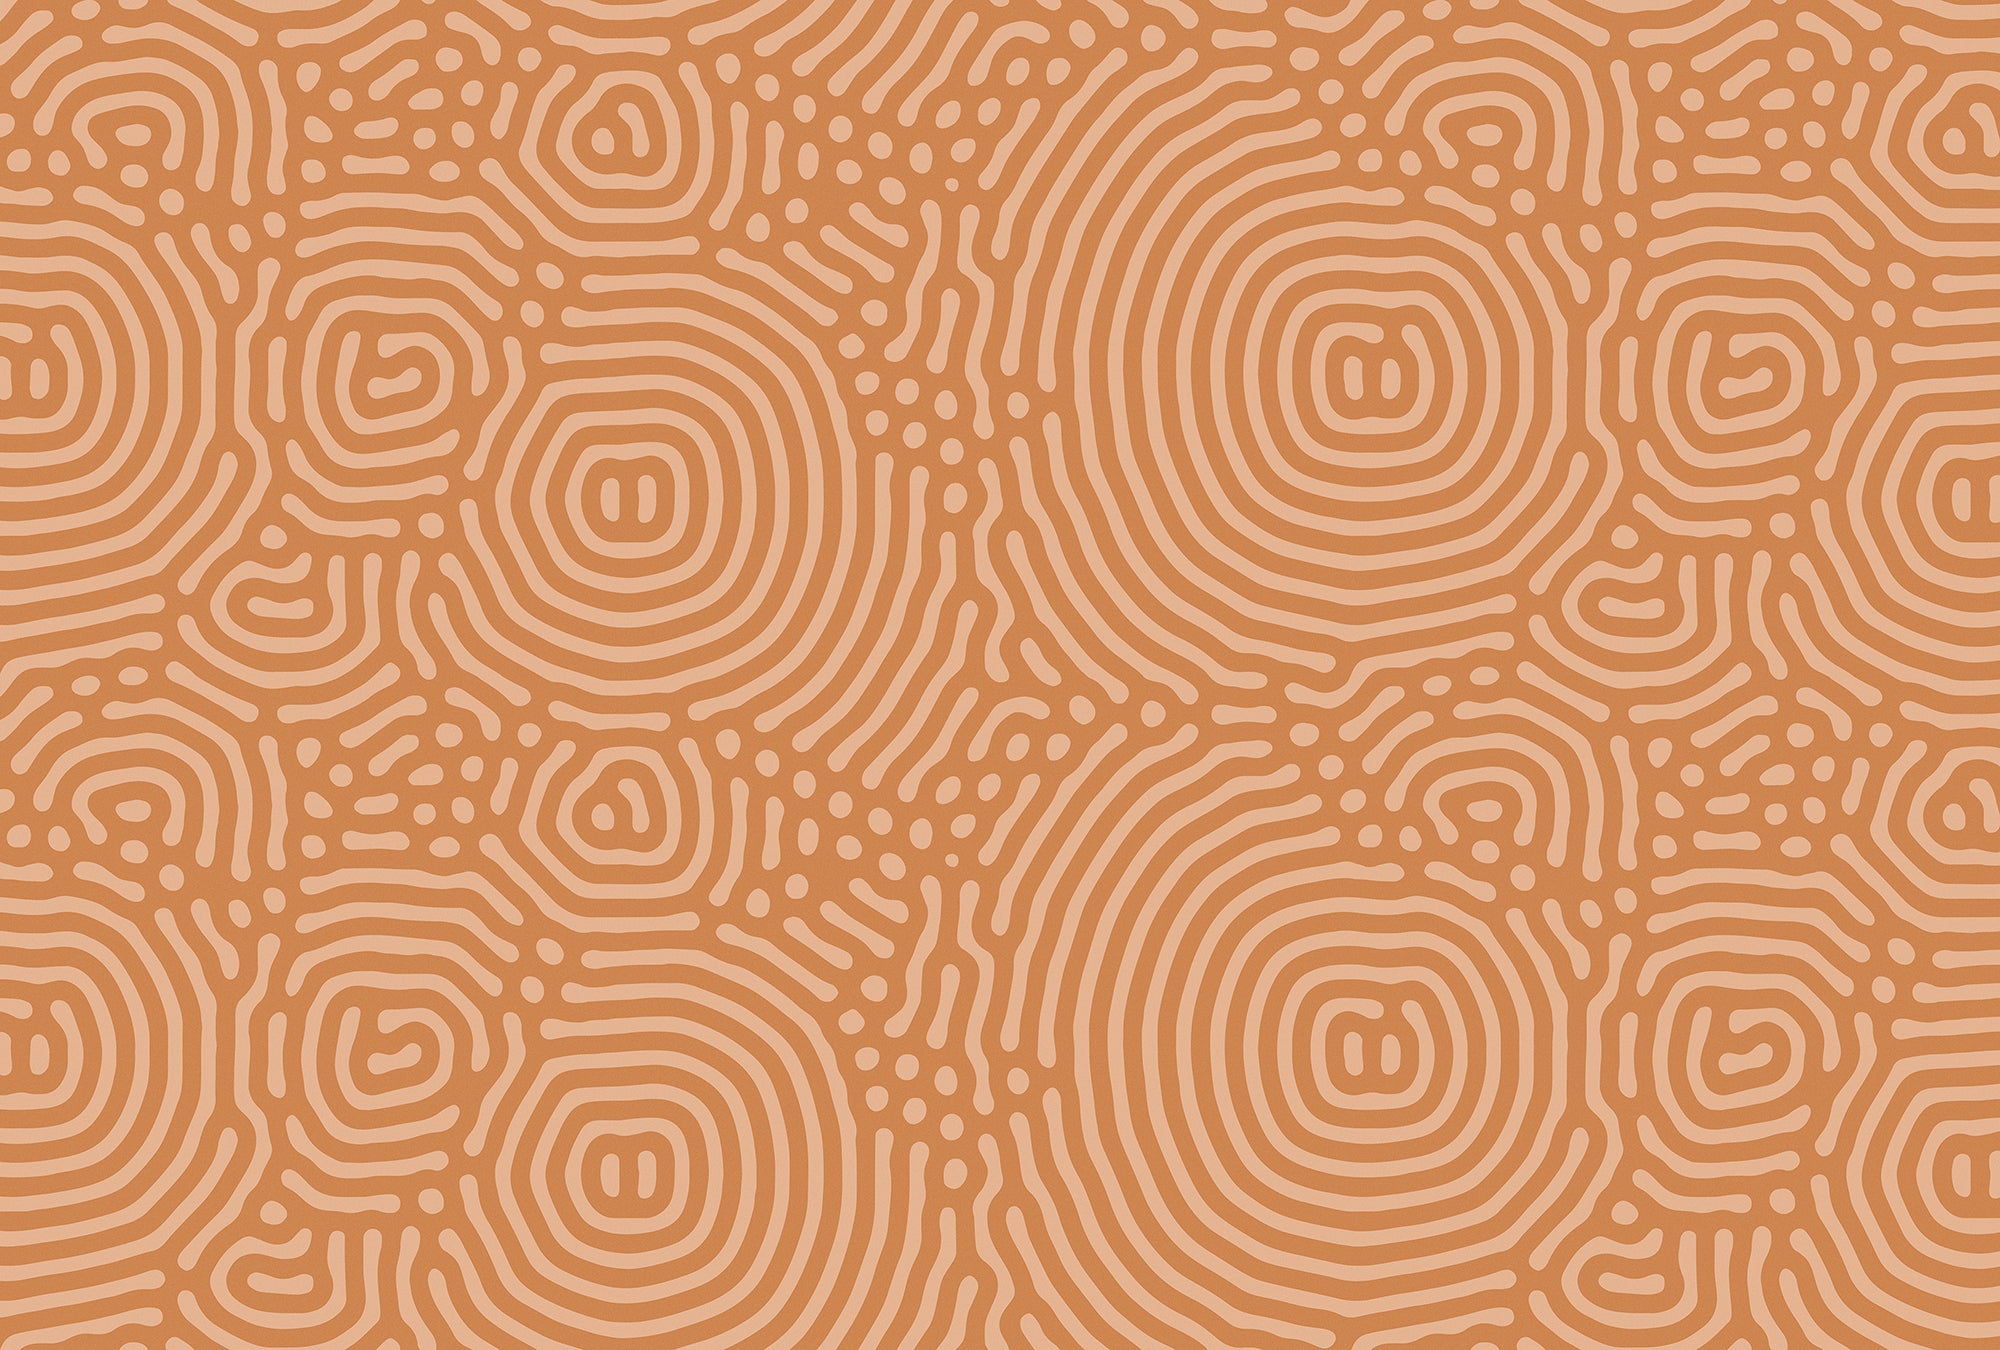 Walls by Patel 3 - Sahel Maze Orange digital print AS Creation Orange   DD122848